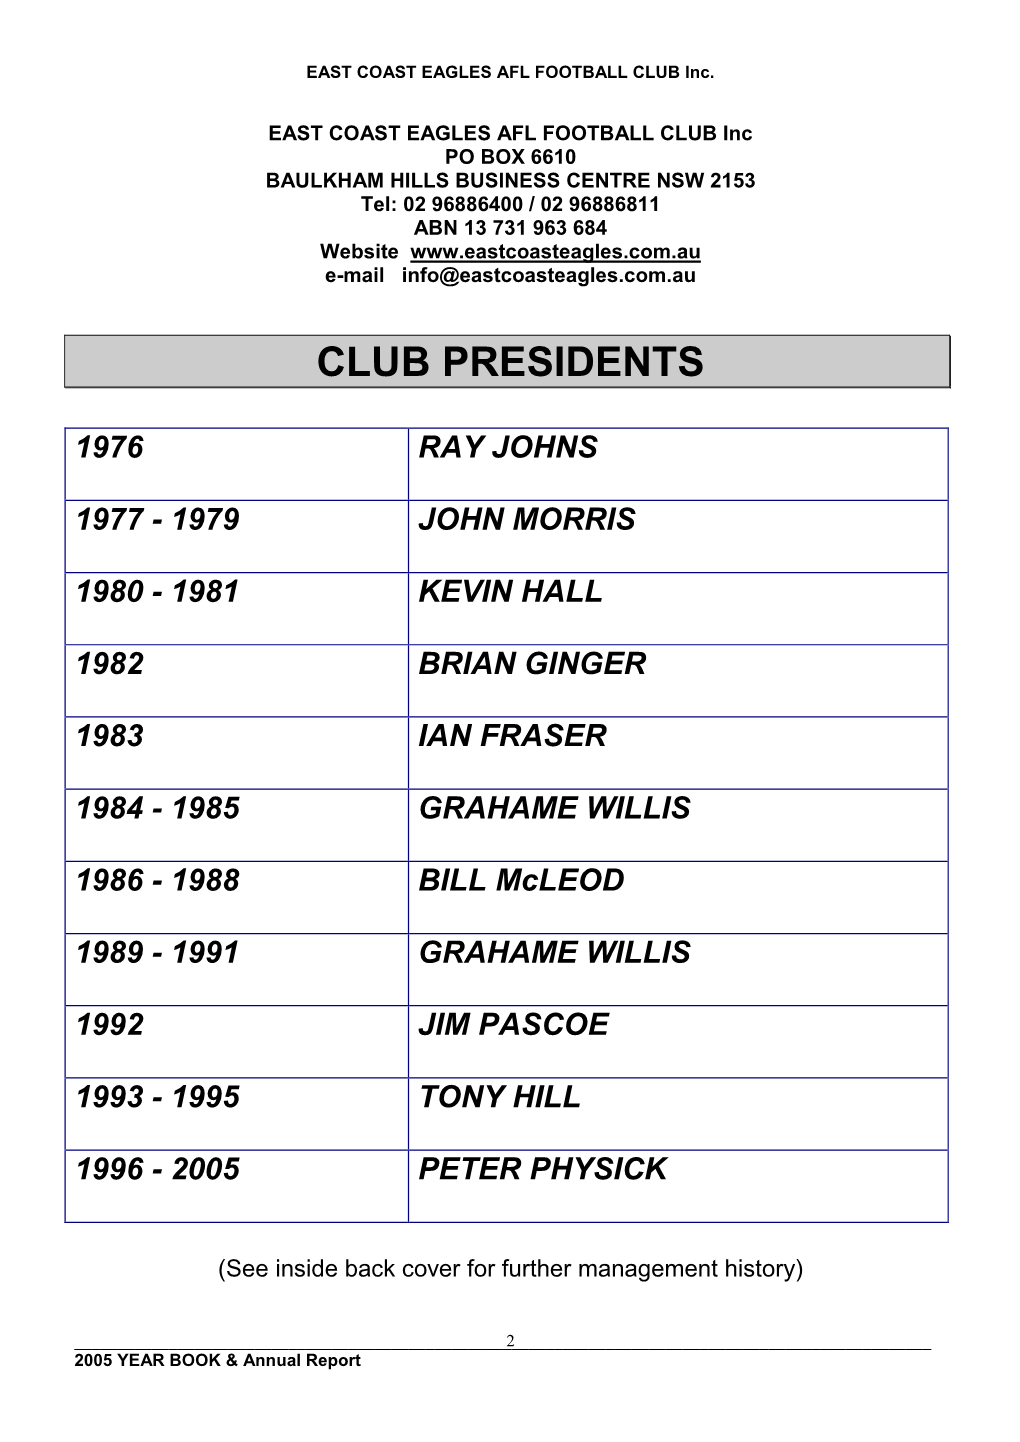 Club Presidents